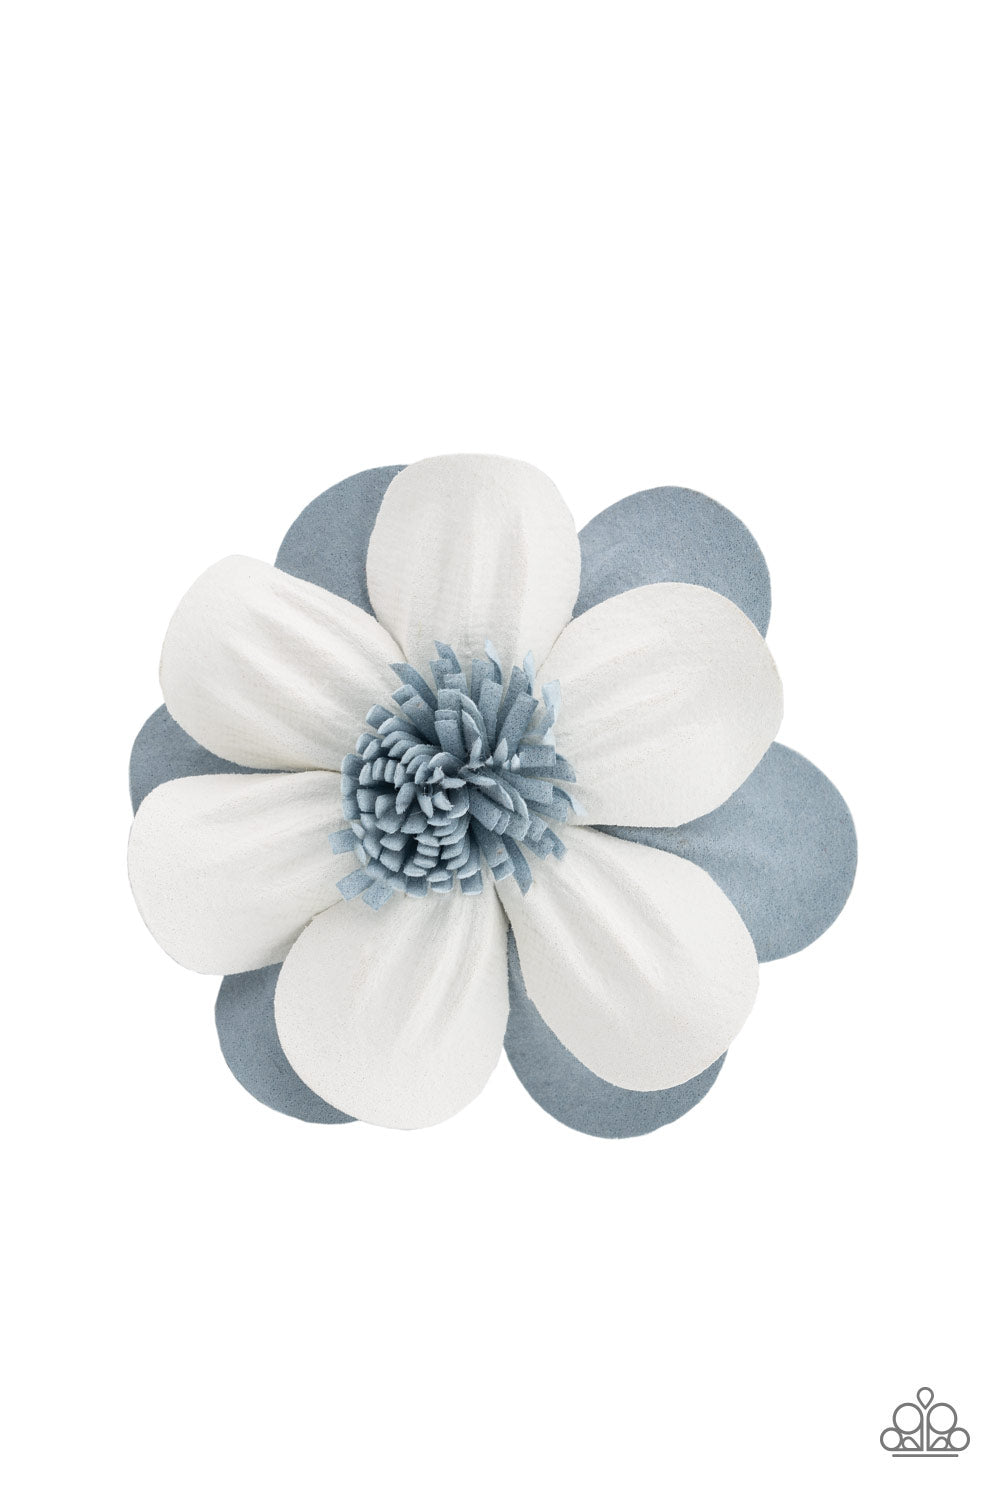 merry-magnolia-blue-p7ss-blxx-083xx